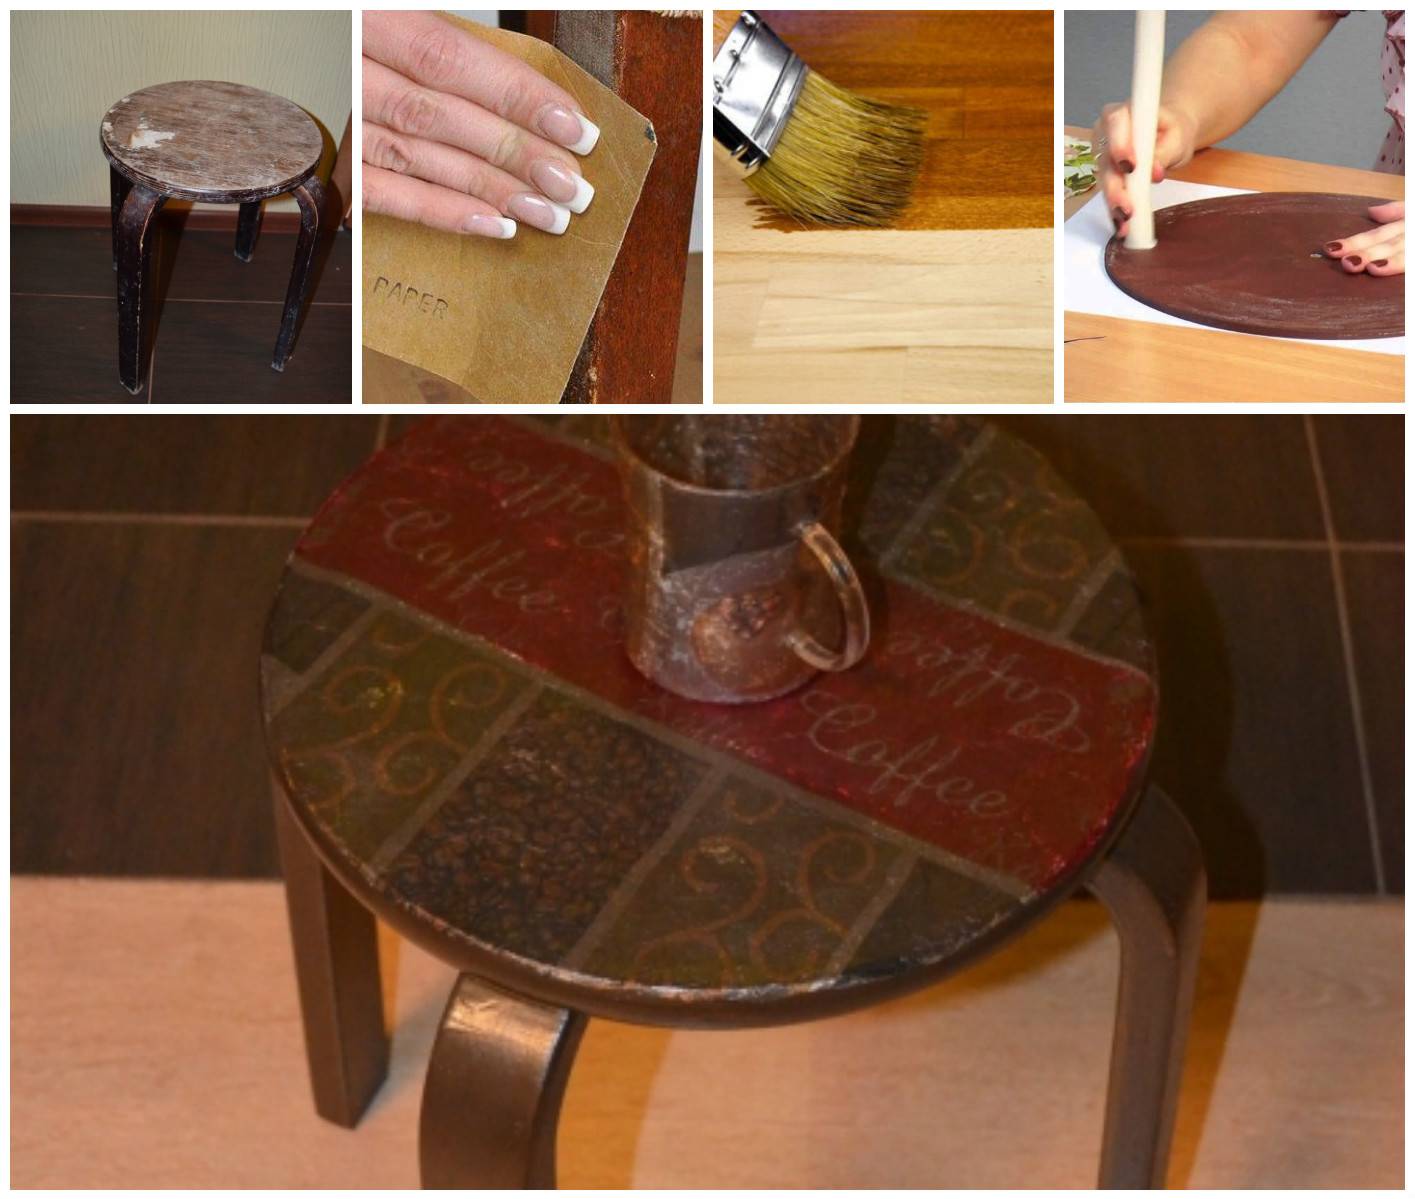 Реставрация мебели своими руками - особенности самостоятельной реставрации, подробная инструкция с описанием этапов